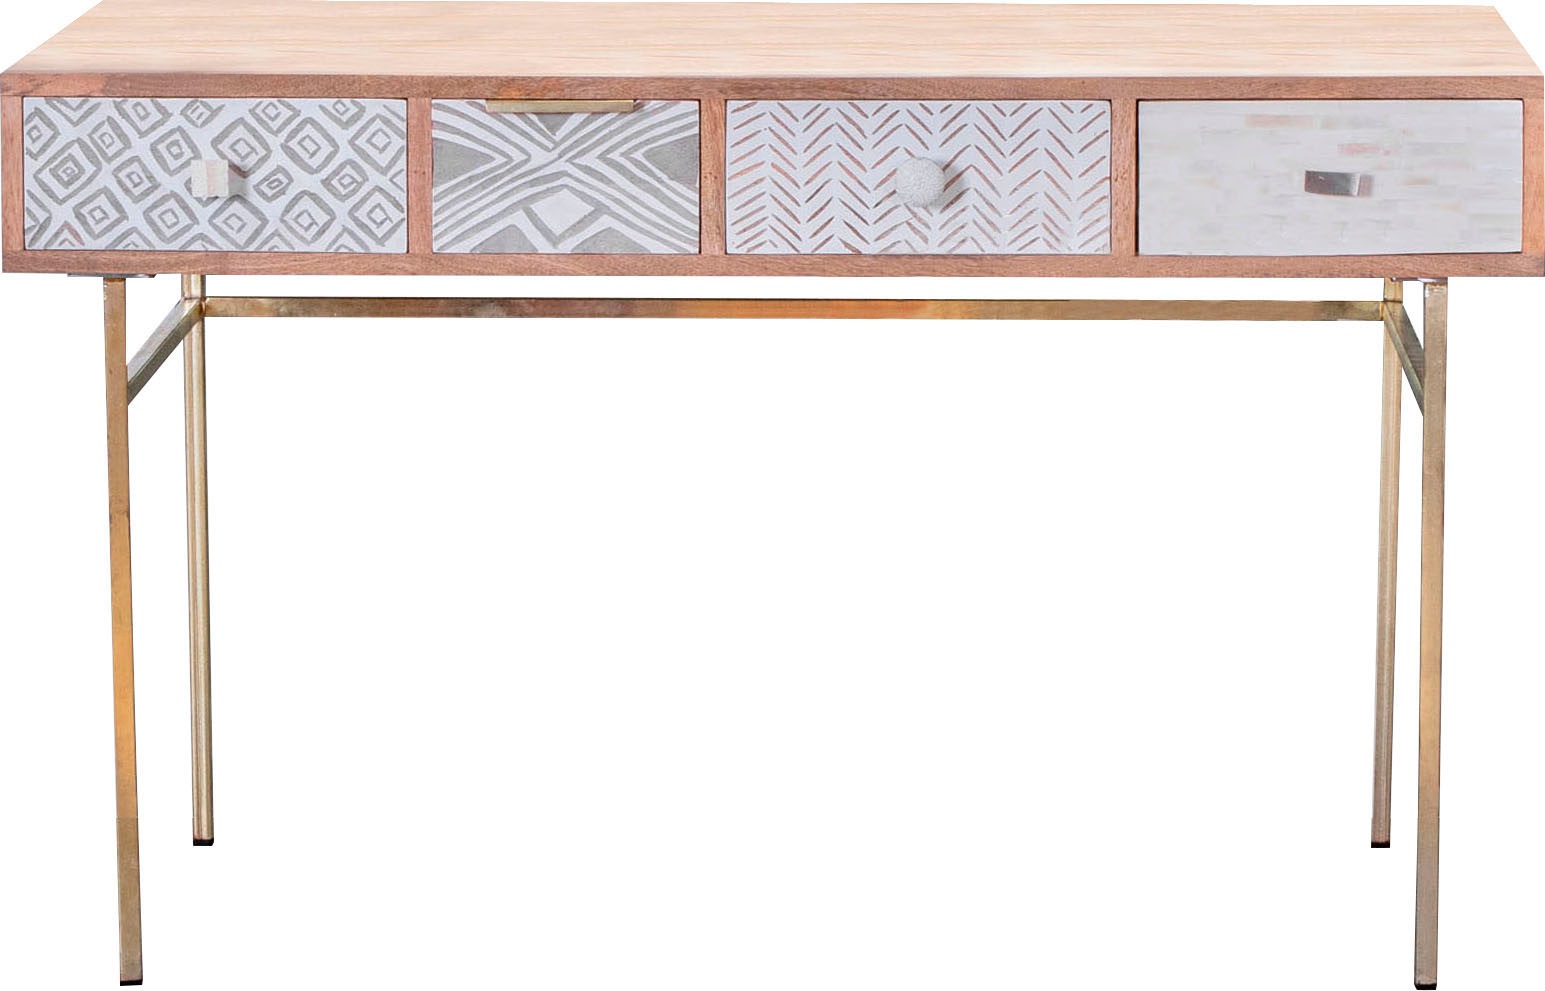 Gutmann Factory Konsolentisch »Linea«, mit Schnitzereien und verschiedenen Materialien verziert, Shabby Chic